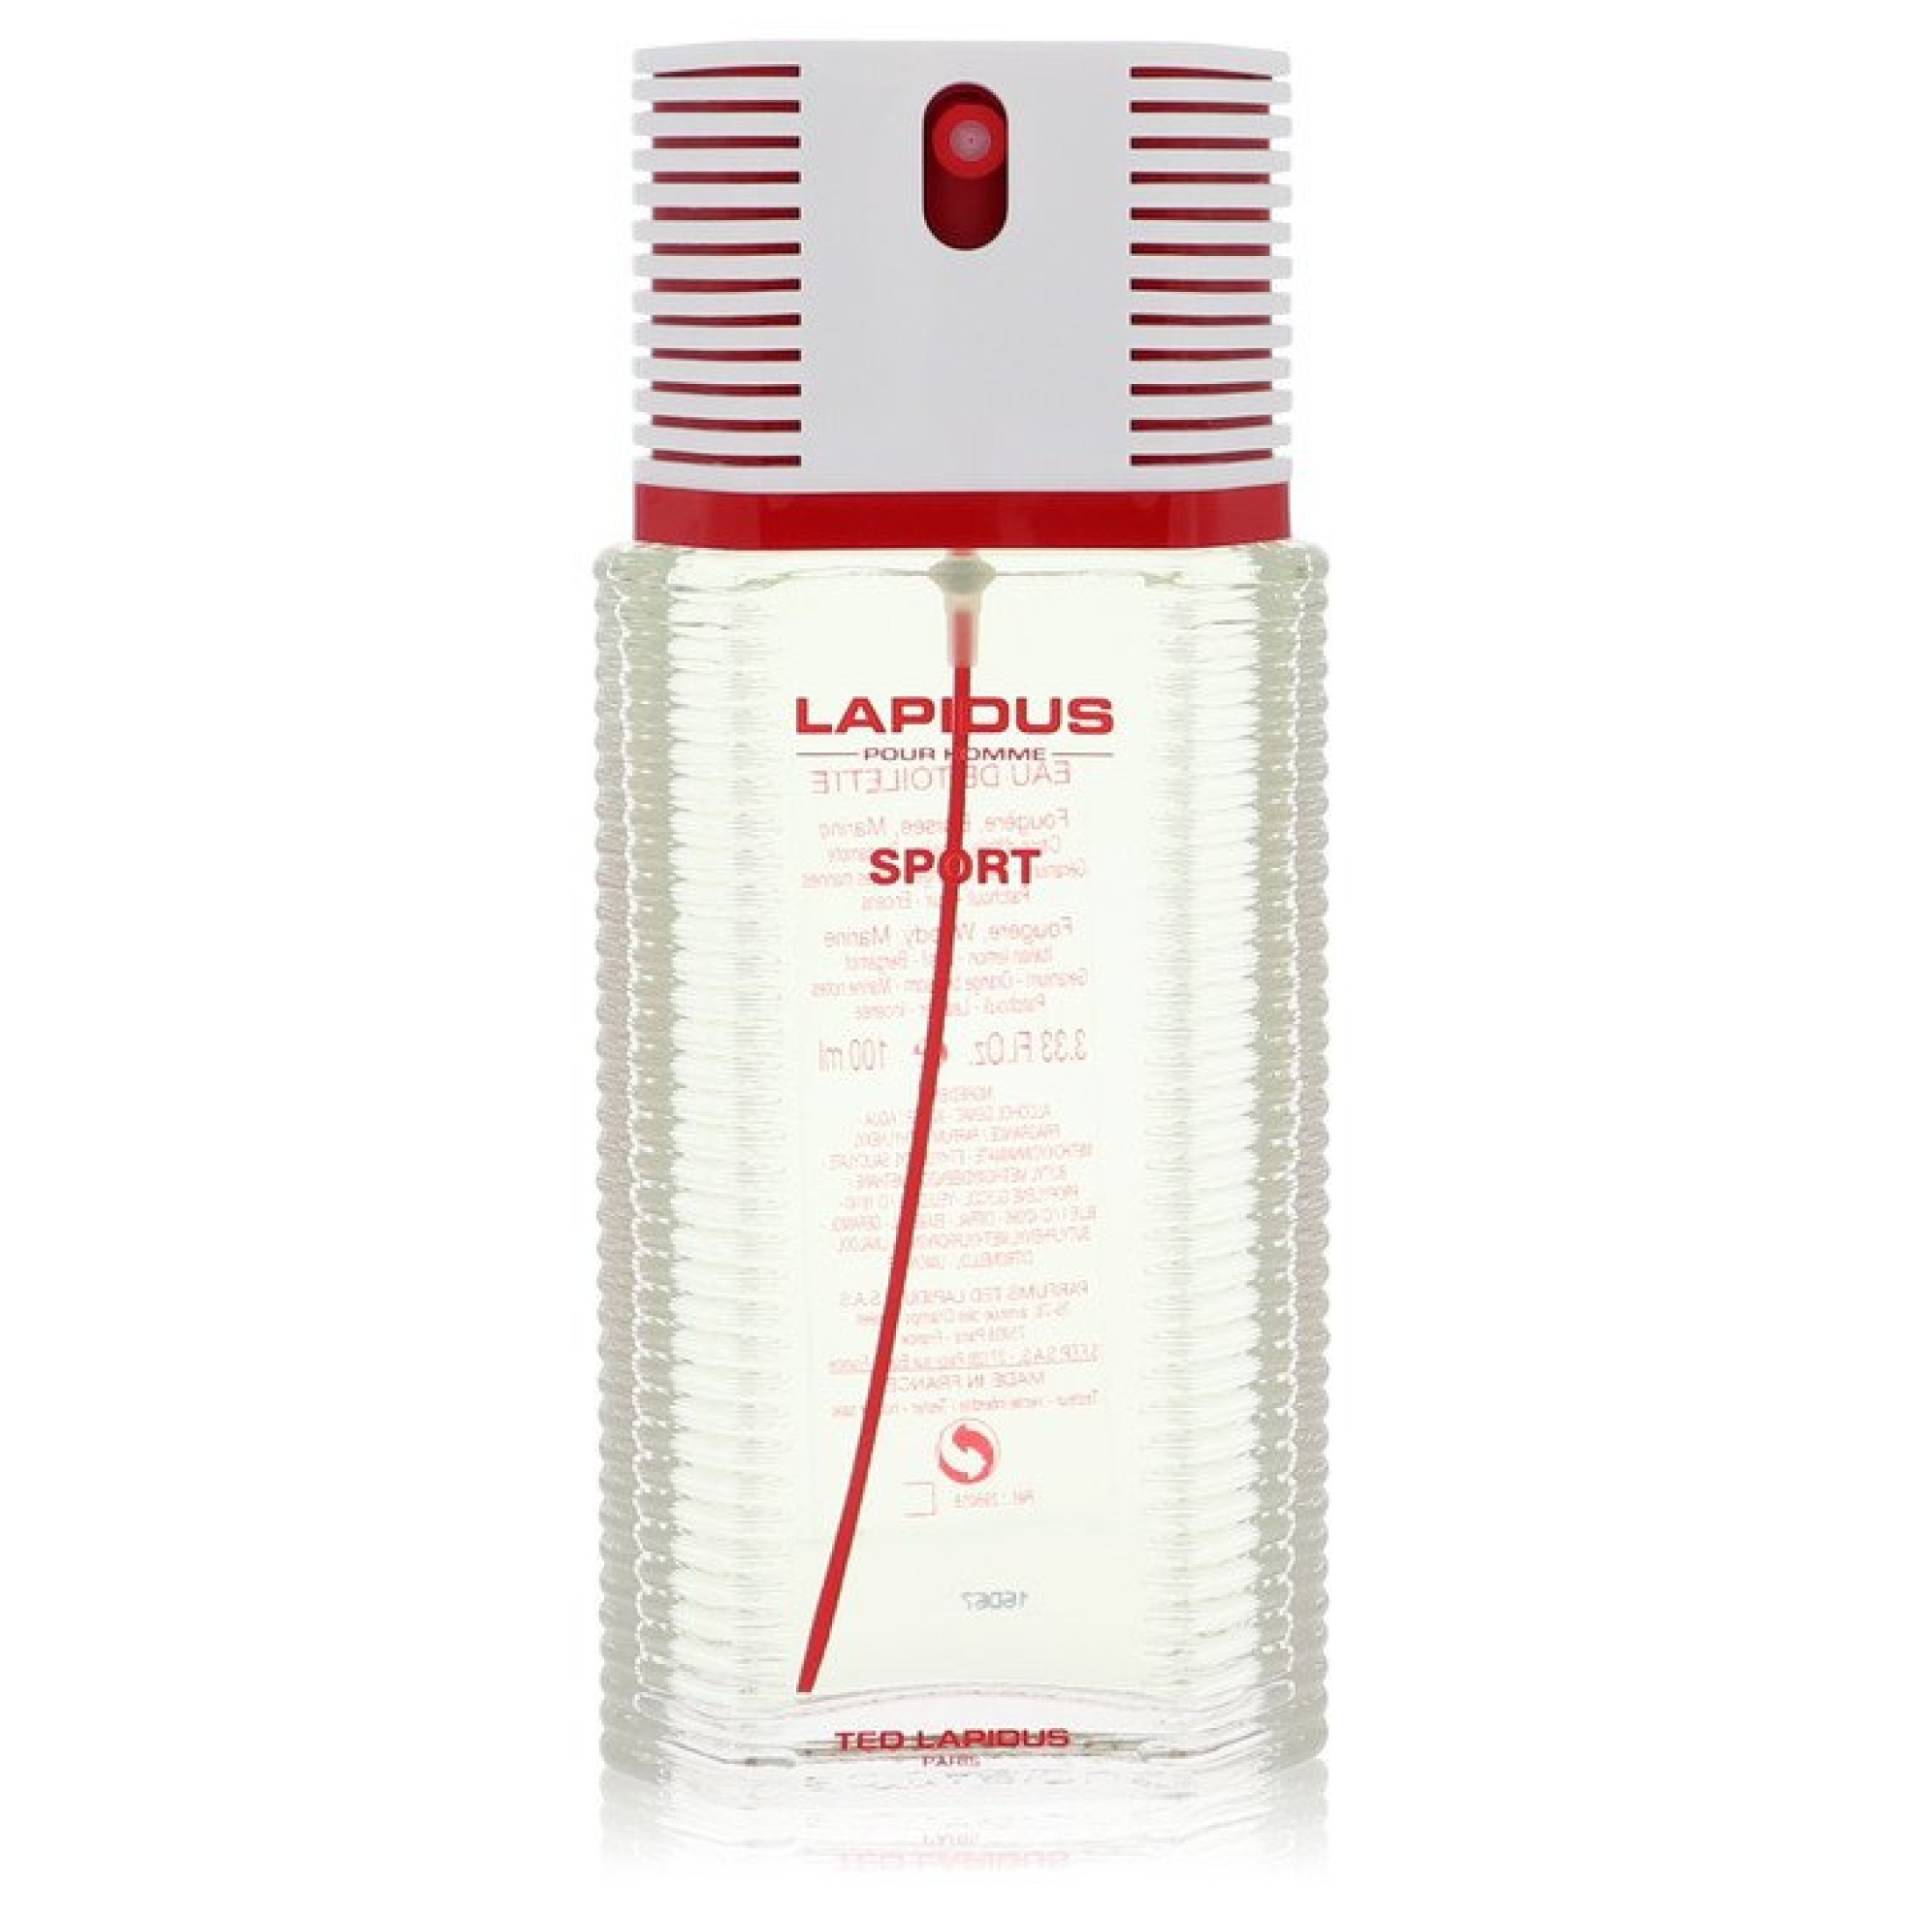 Lapidus Pour Homme Sport Eau De Toilette Spray (Tester) 98 ml von Ted Lapidus